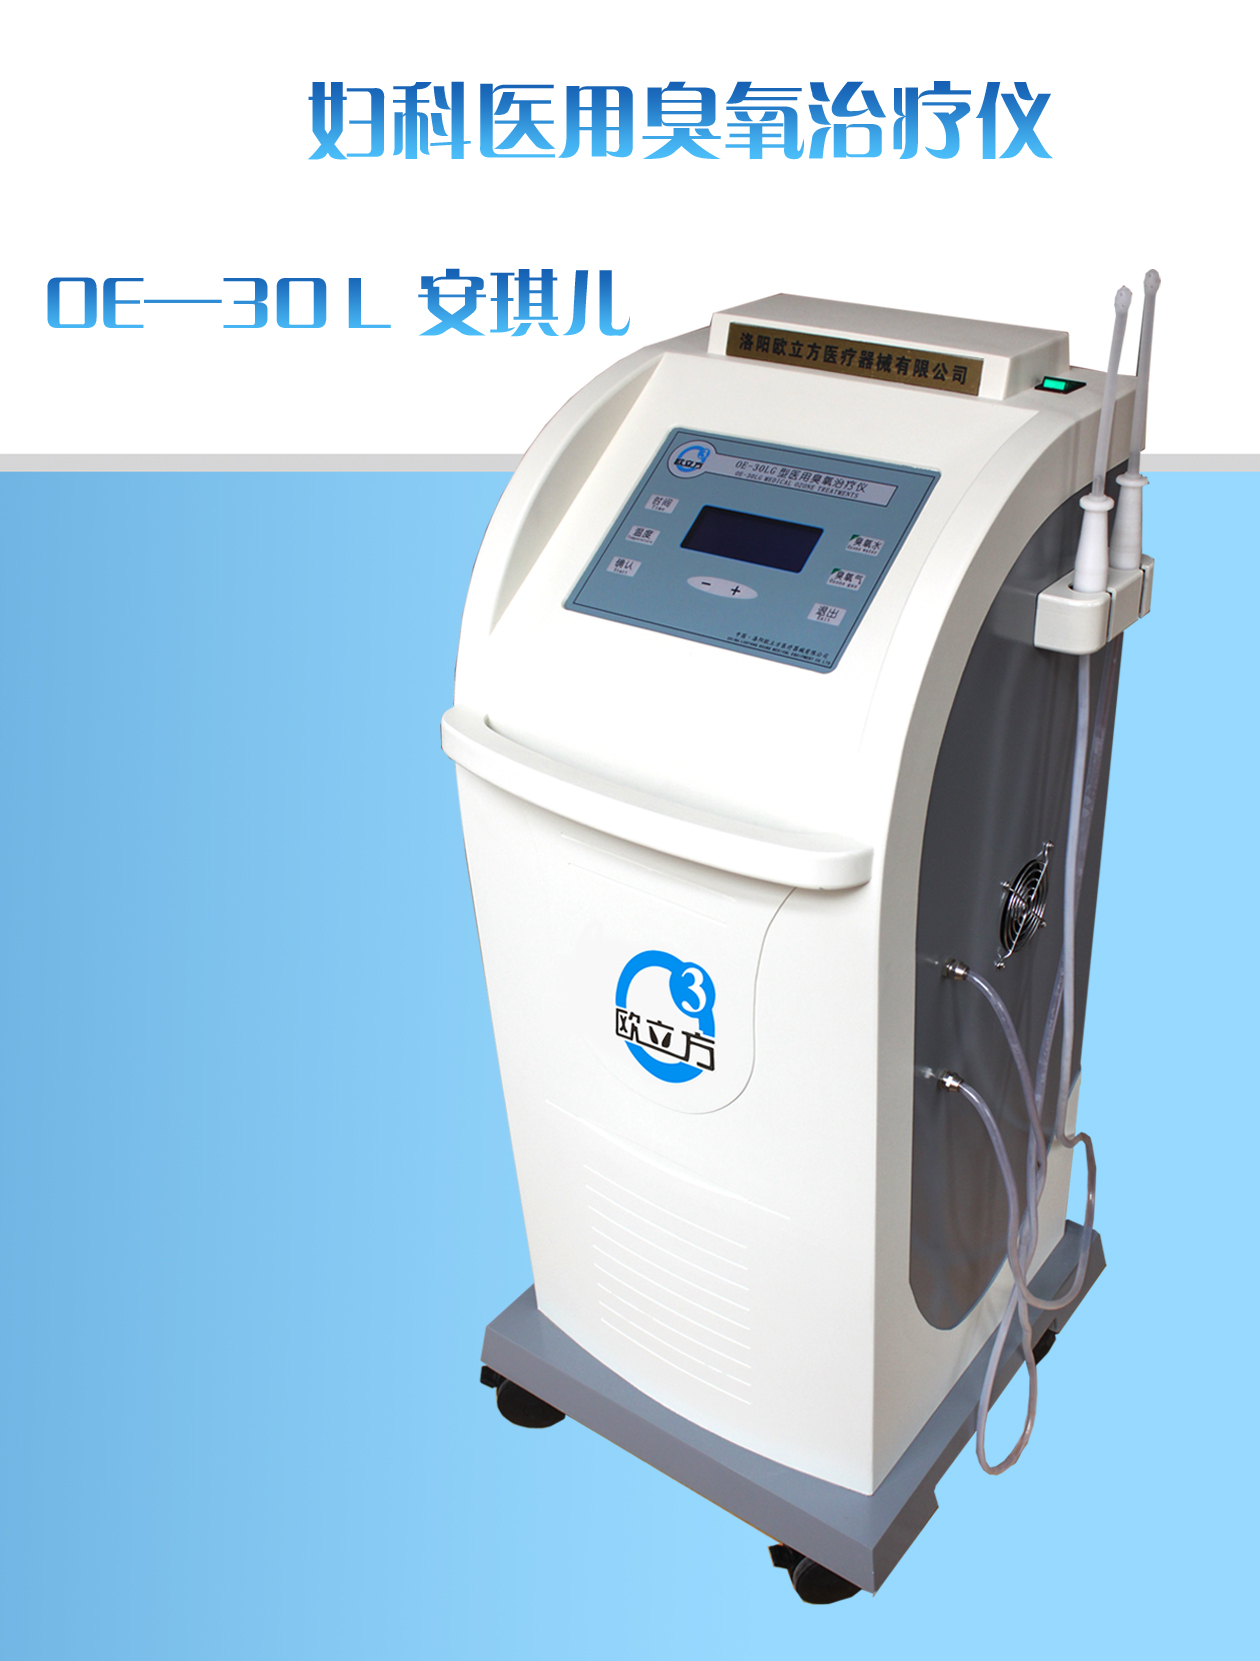 欧立方 OE-30L 弥赛亚II 妇科医用臭氧治疗仪